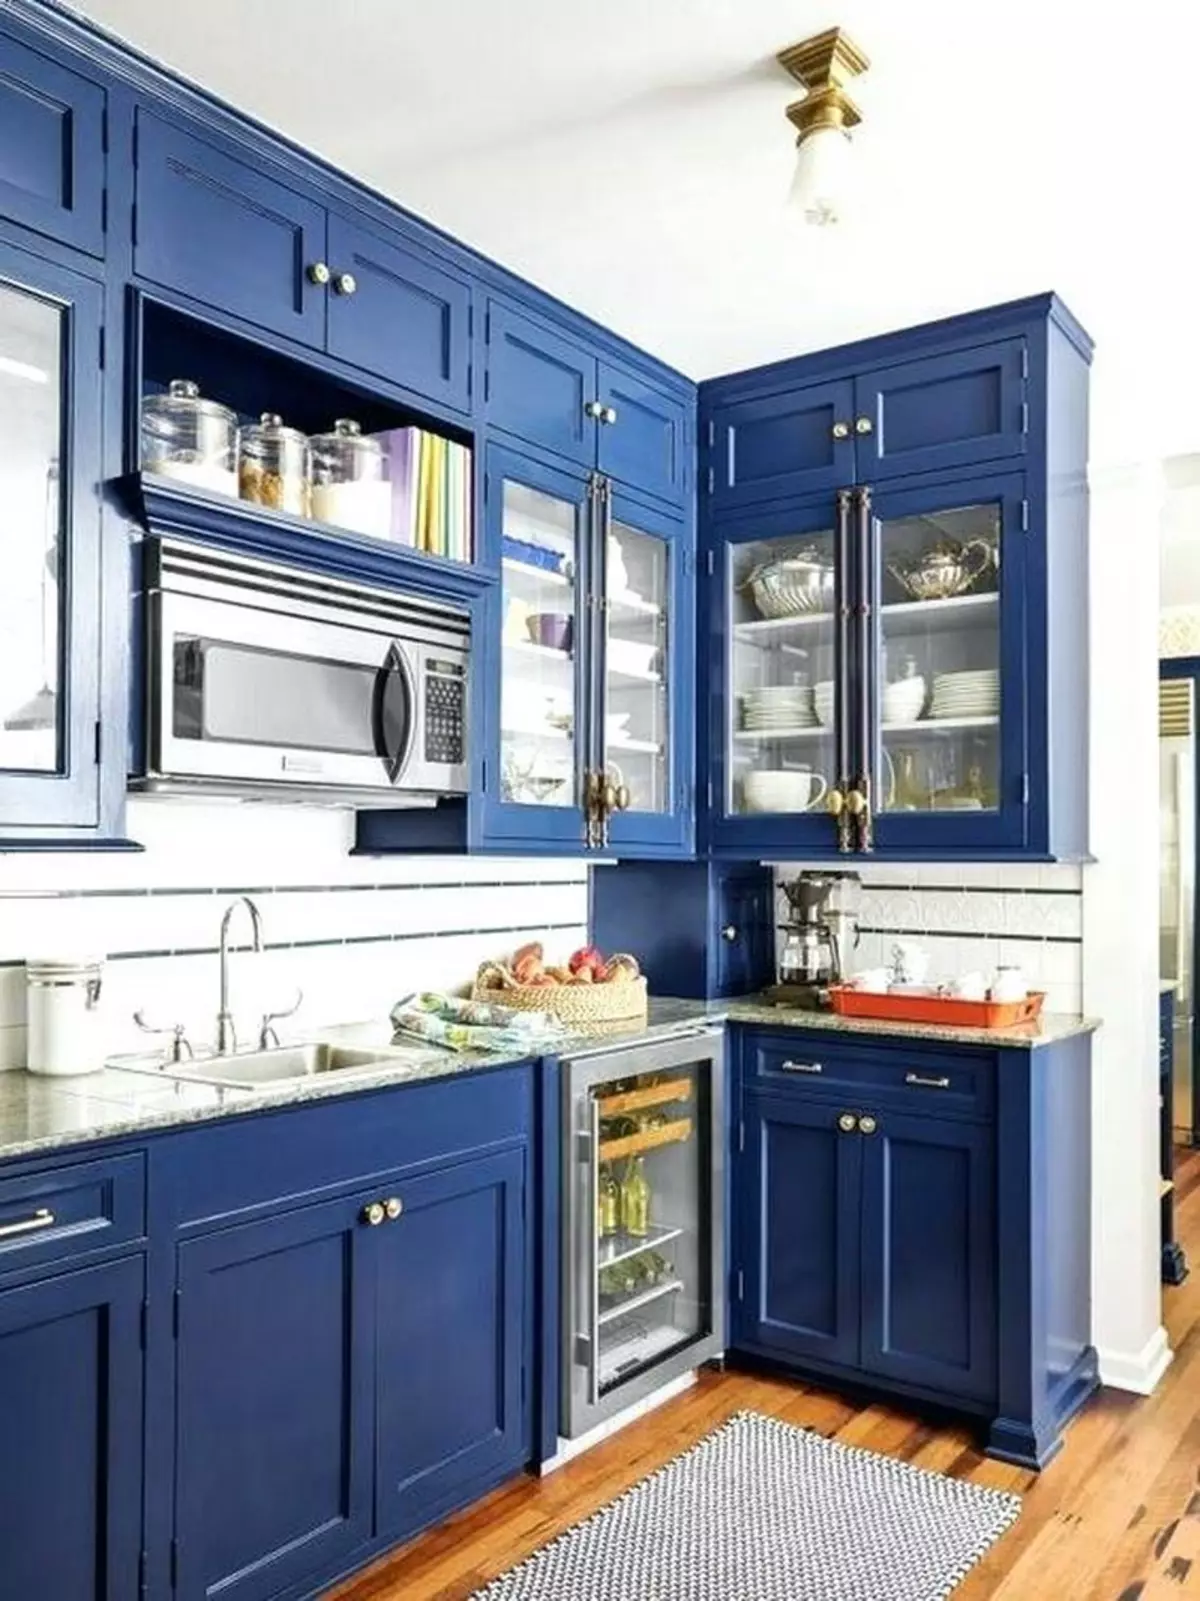 Cucina bianca-blu (64 foto): Caratteristiche dell'auricolare della cucina in colore bianco-blu per la cucina Interior design, accenti sulle pareti in colori simili 9393_6